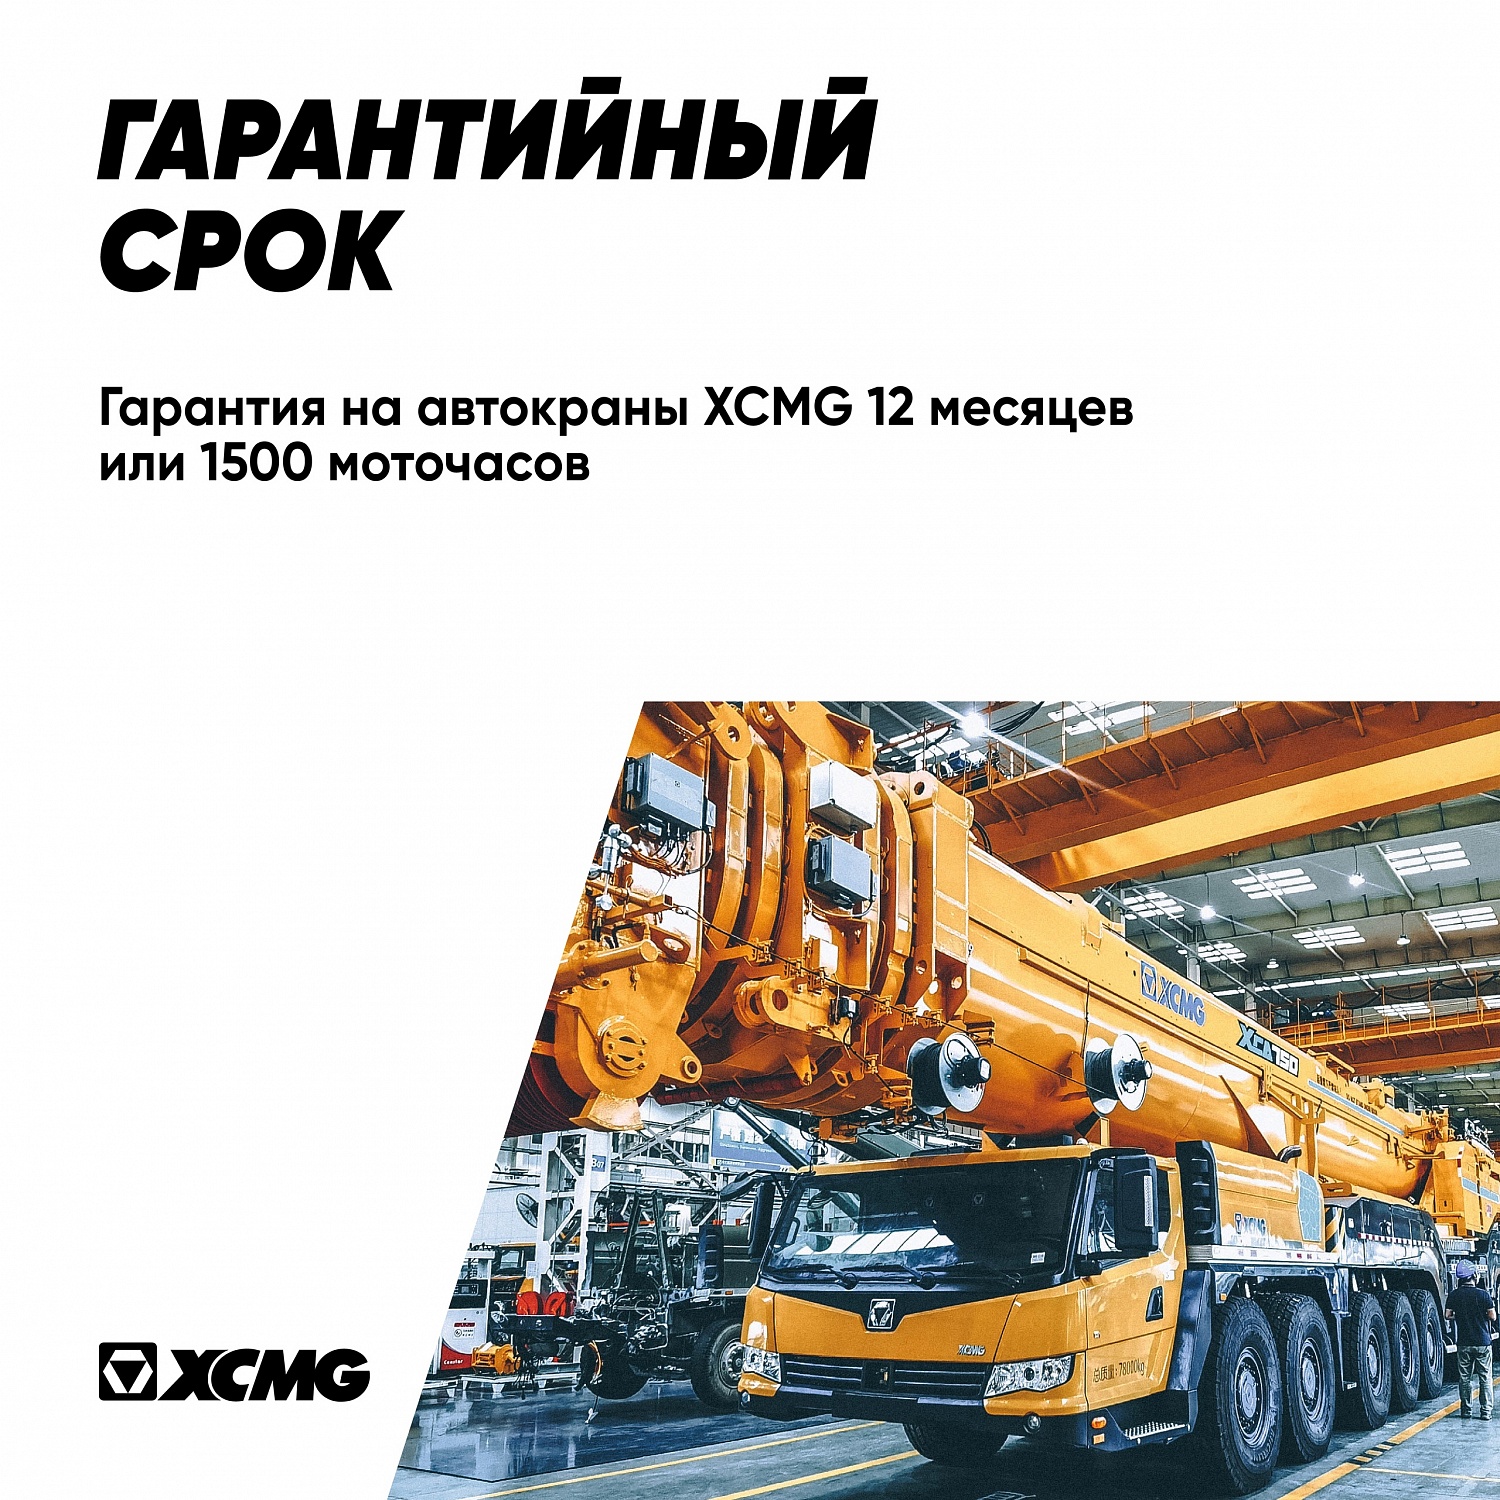 XCMG – крупнейший производитель кранов в мире